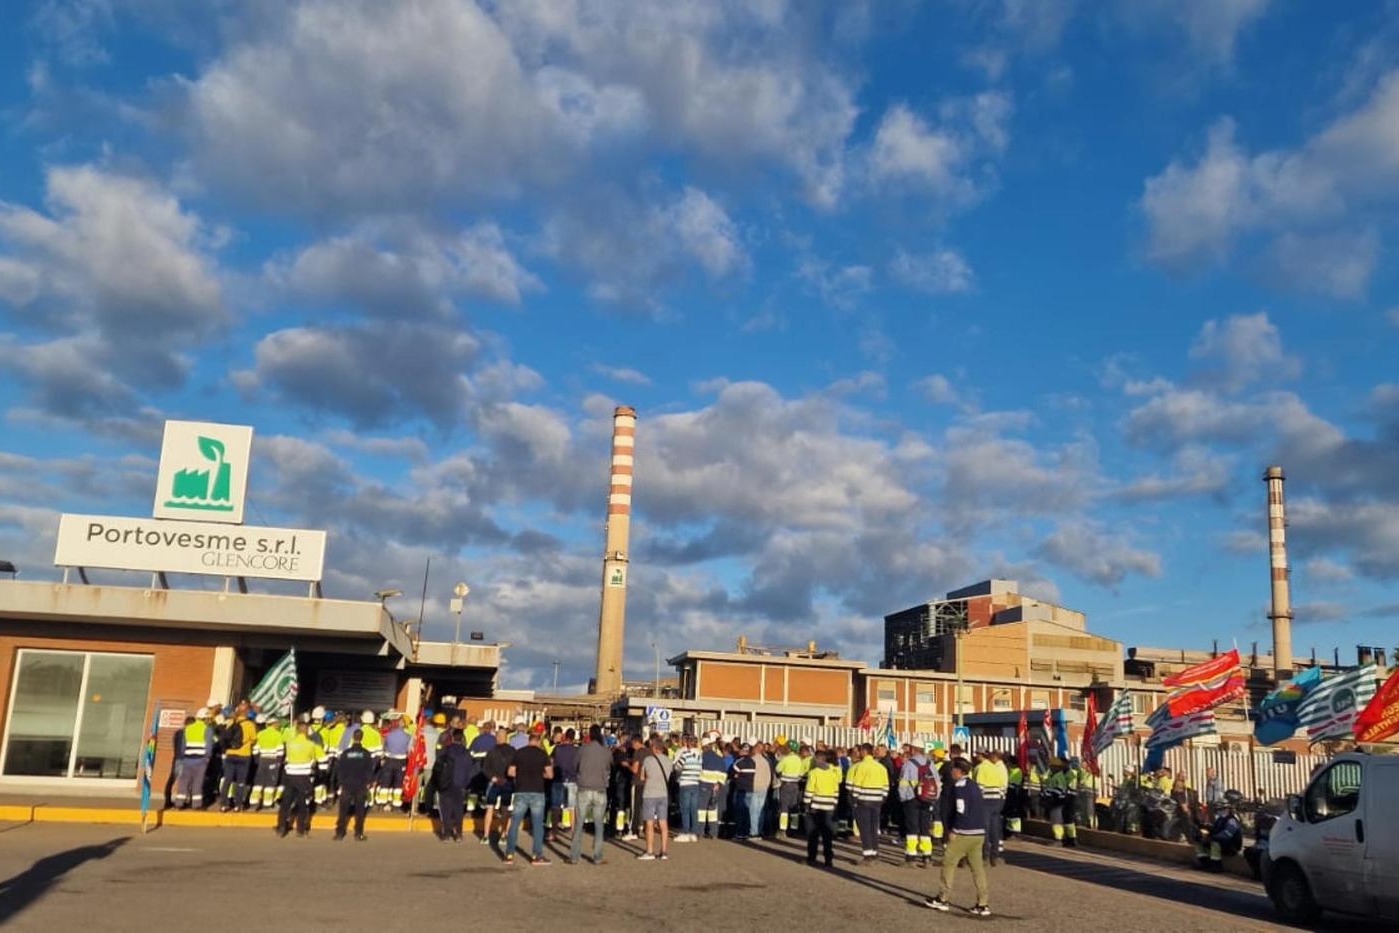 L'assemblea dei lavoratori davanti ai cancelli della Portovesme srl a Portoscuso (Ansa - Fois)